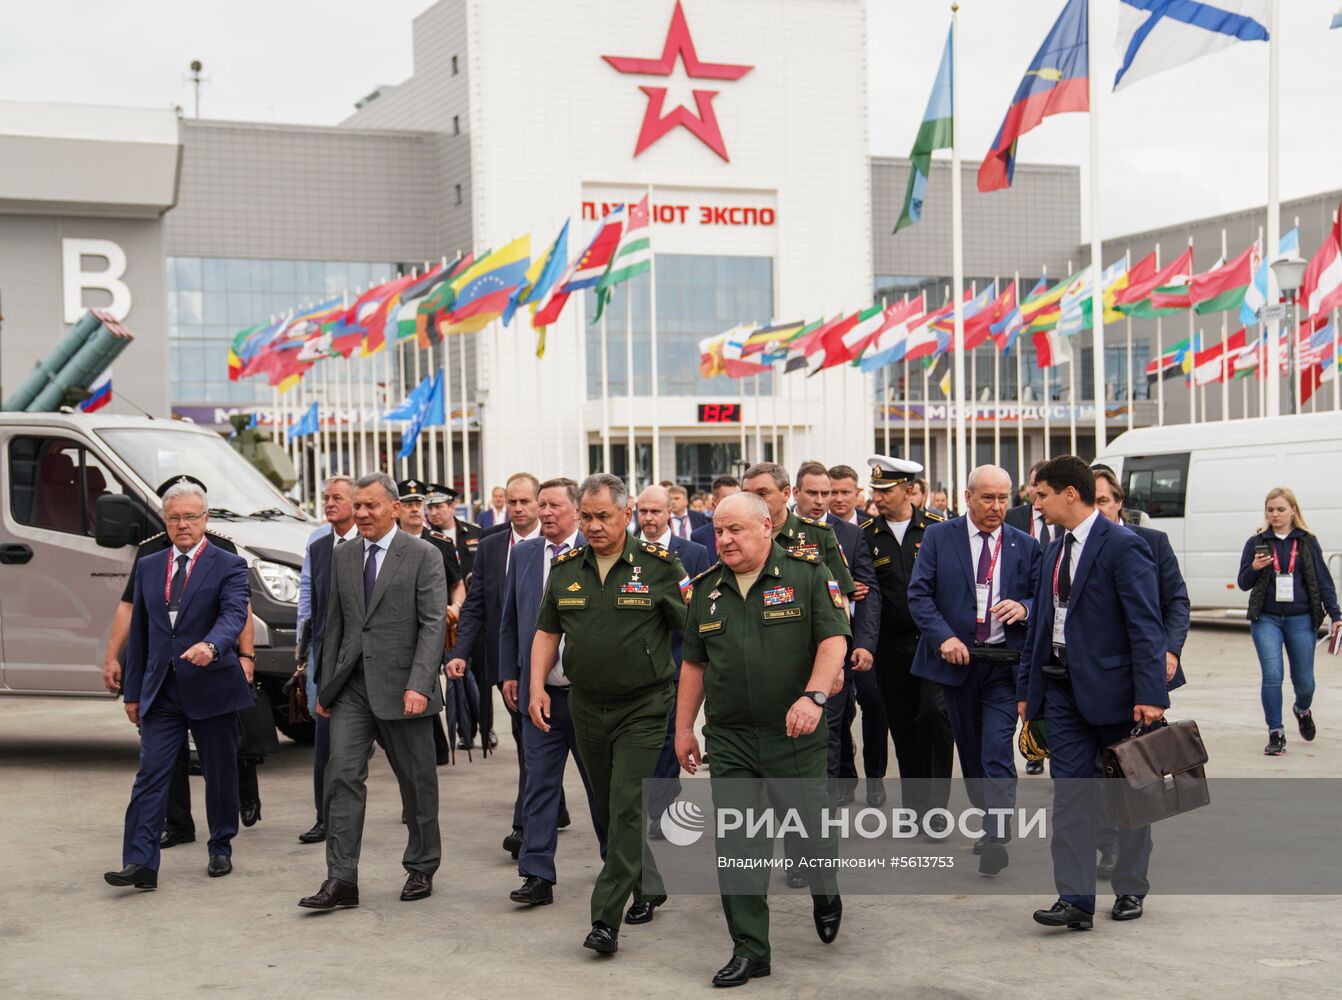 IV Международный военно-технический форум «Армия-2018». День первый